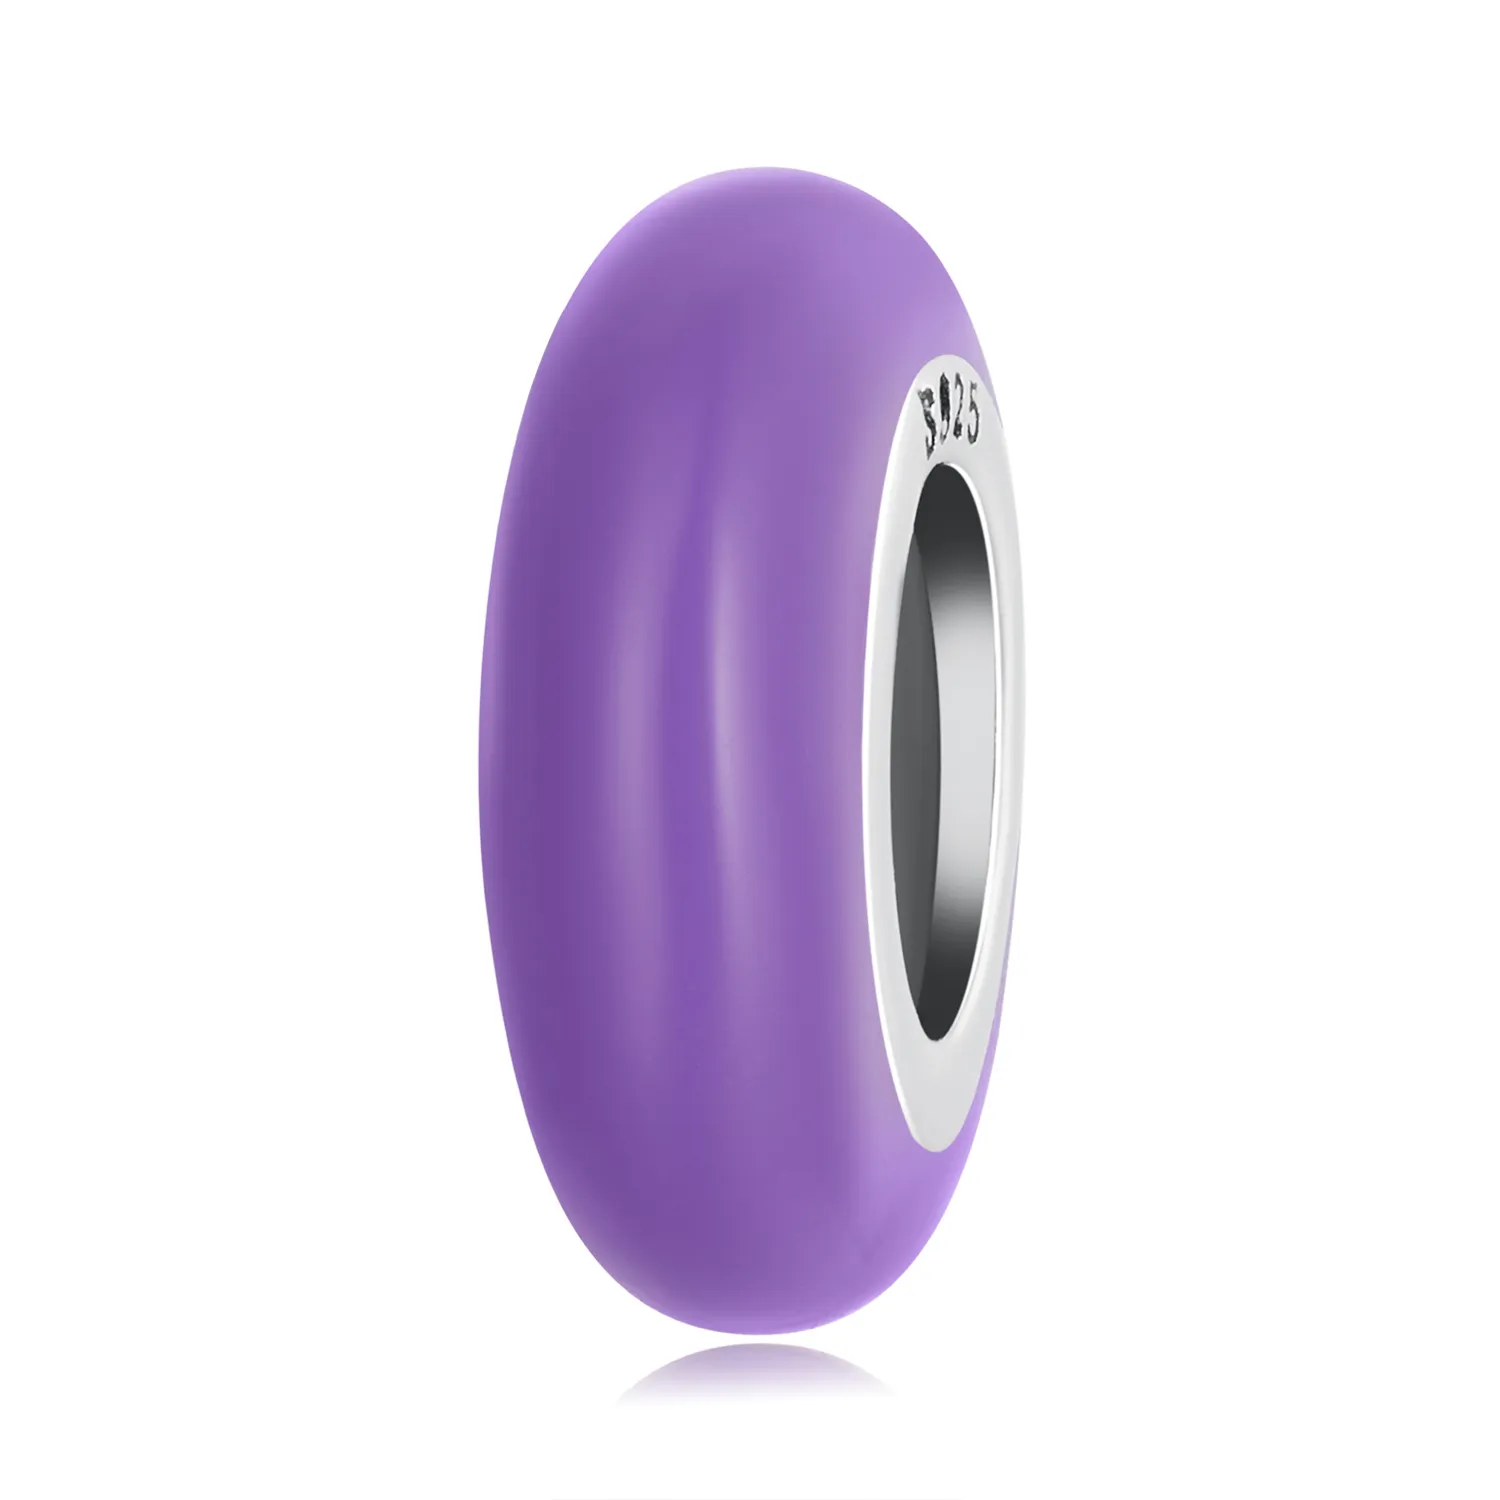 pandora style purple spacer charm scc1450 vt